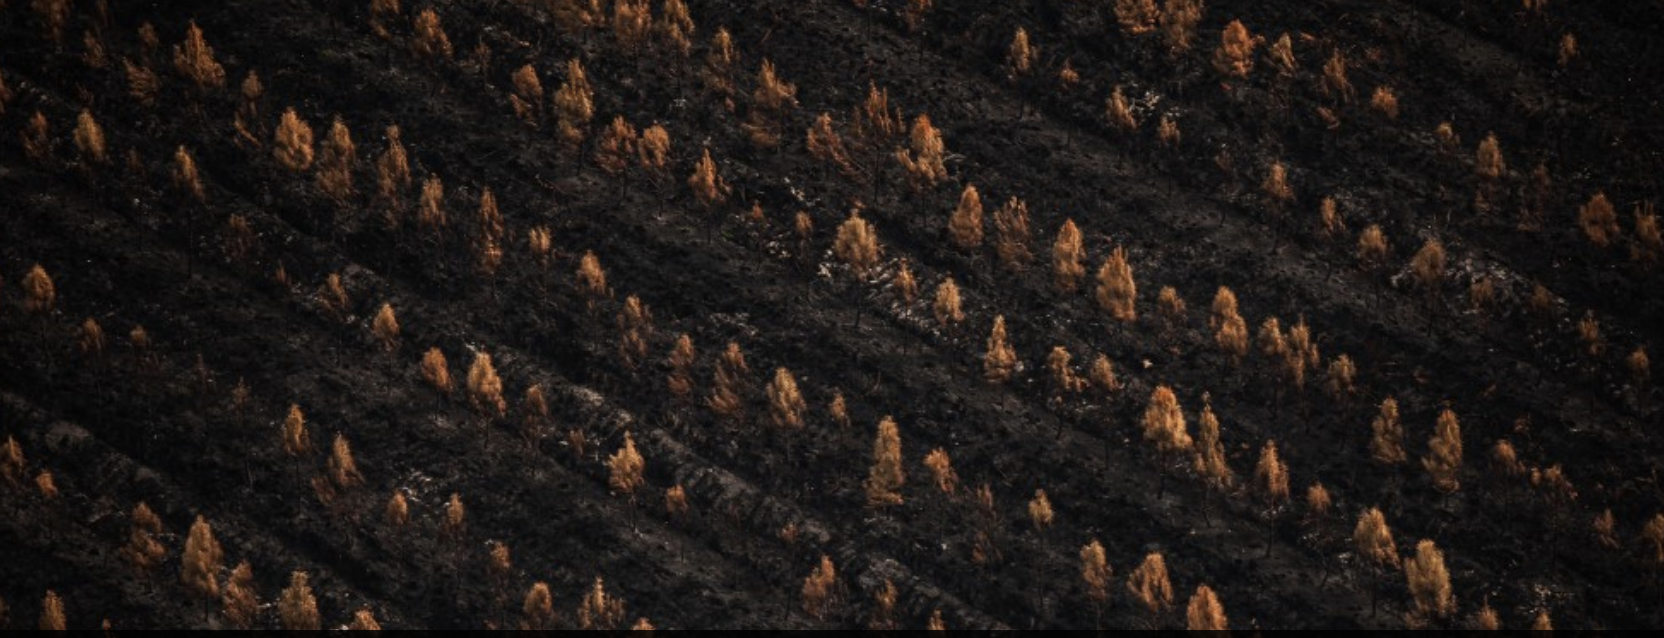 Feux de forêt : 47 000 hectares brûlés dès juillet, un record